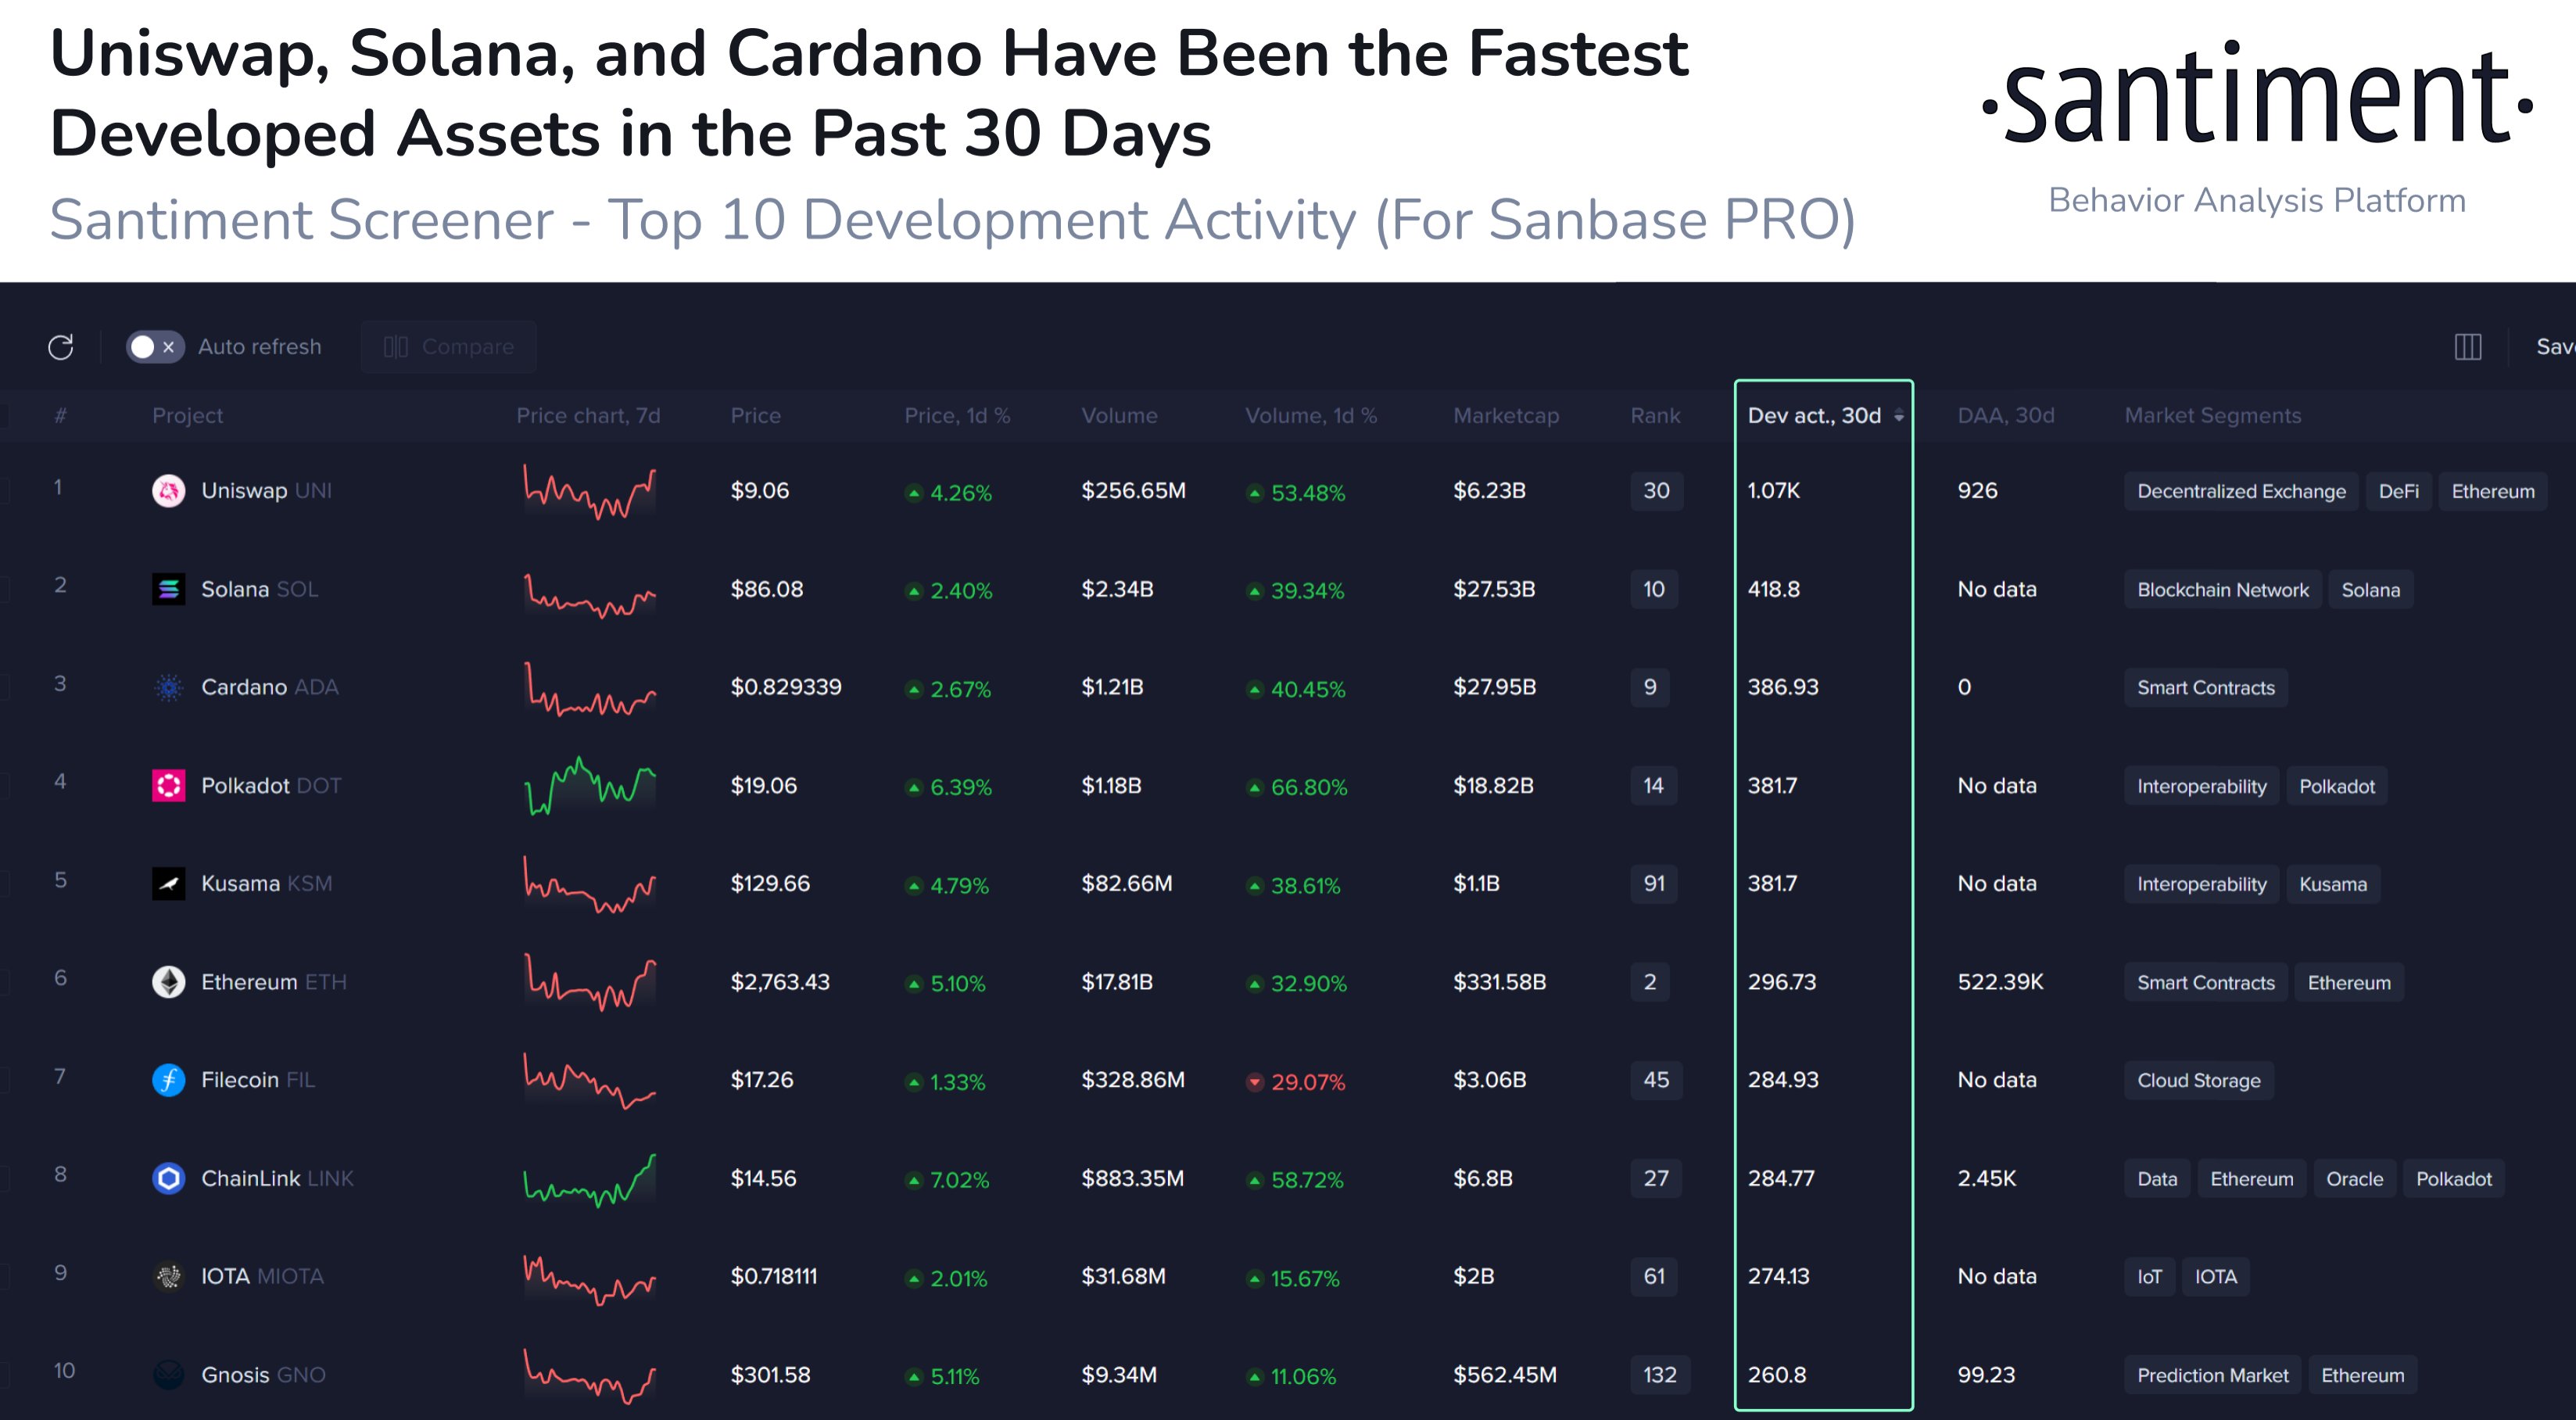 ViMoney: Santiment: Cardano nằm trong top 5 tài sản phát triển nhanh nhất trong 30 ngày qua